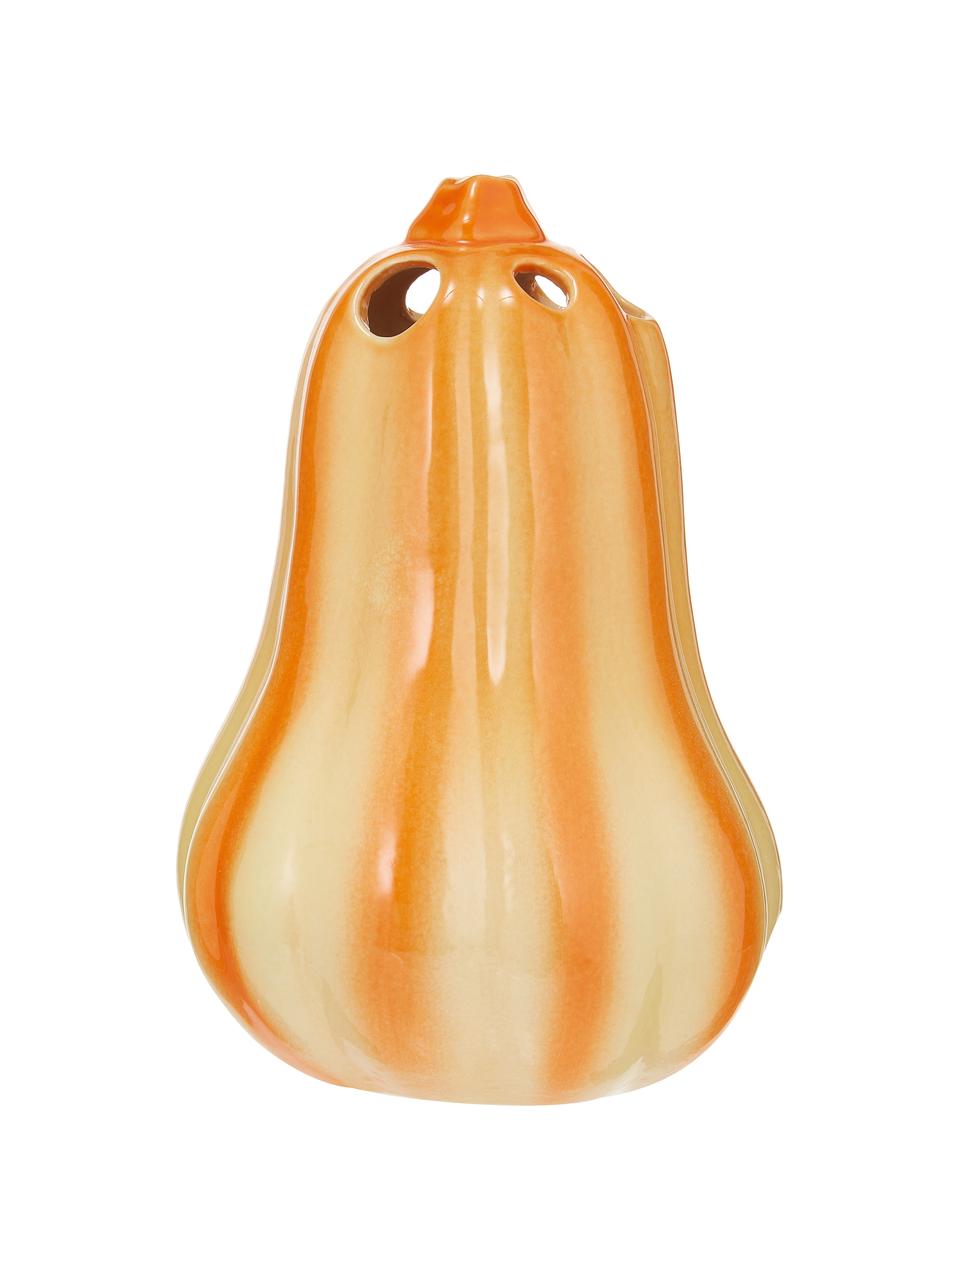 Handgefertigte Vase Pumpkin aus Steingut, Steingut, Orange, Ø 12 x H 18 cm